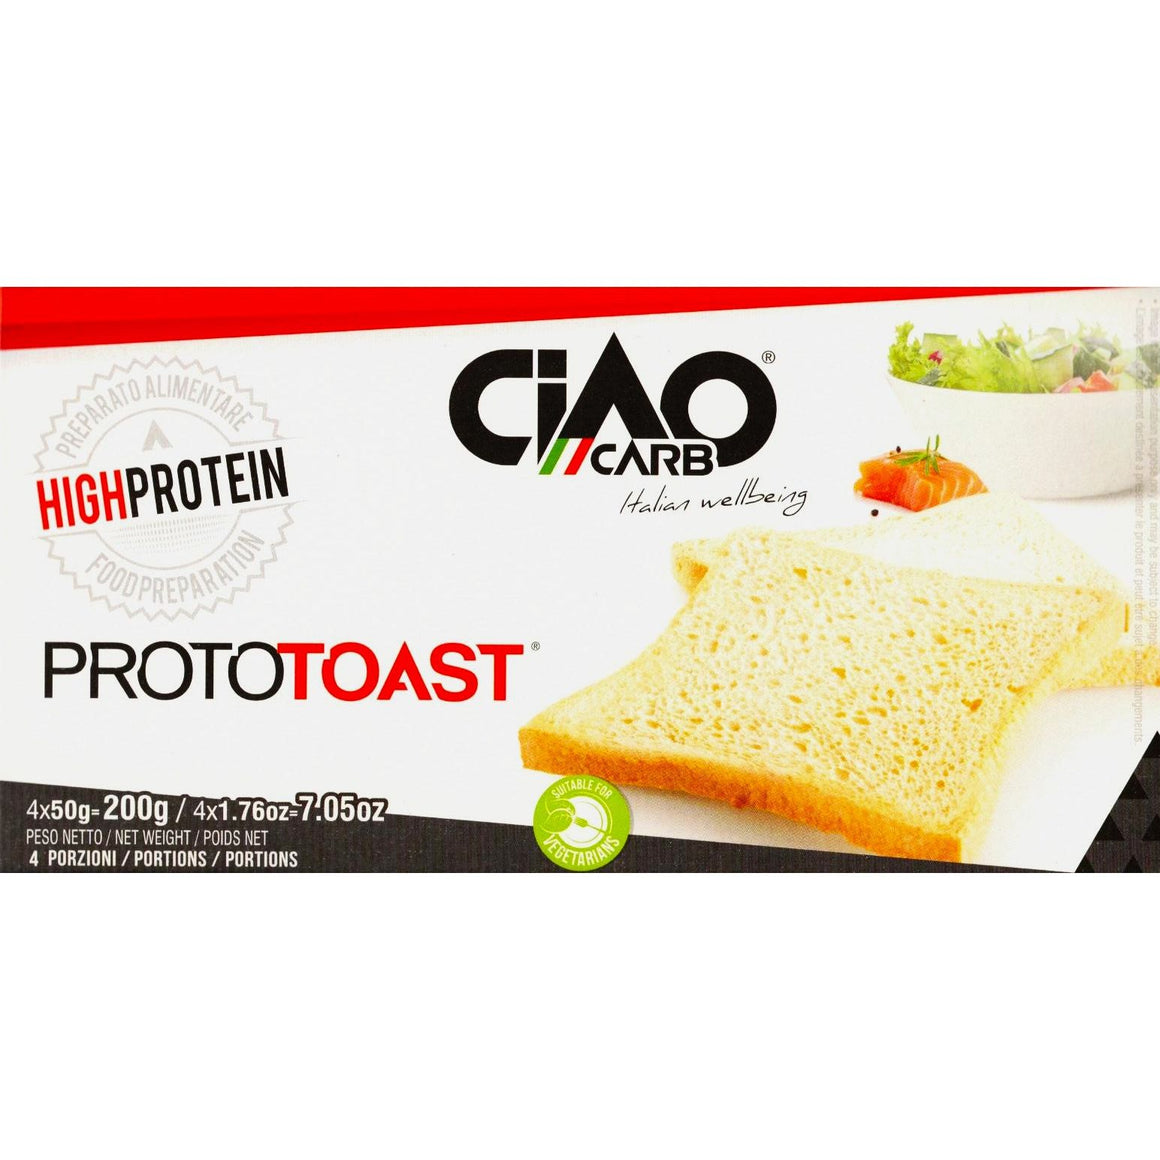 Ciao Carb - Proto Toast - Original - 4 x 50g